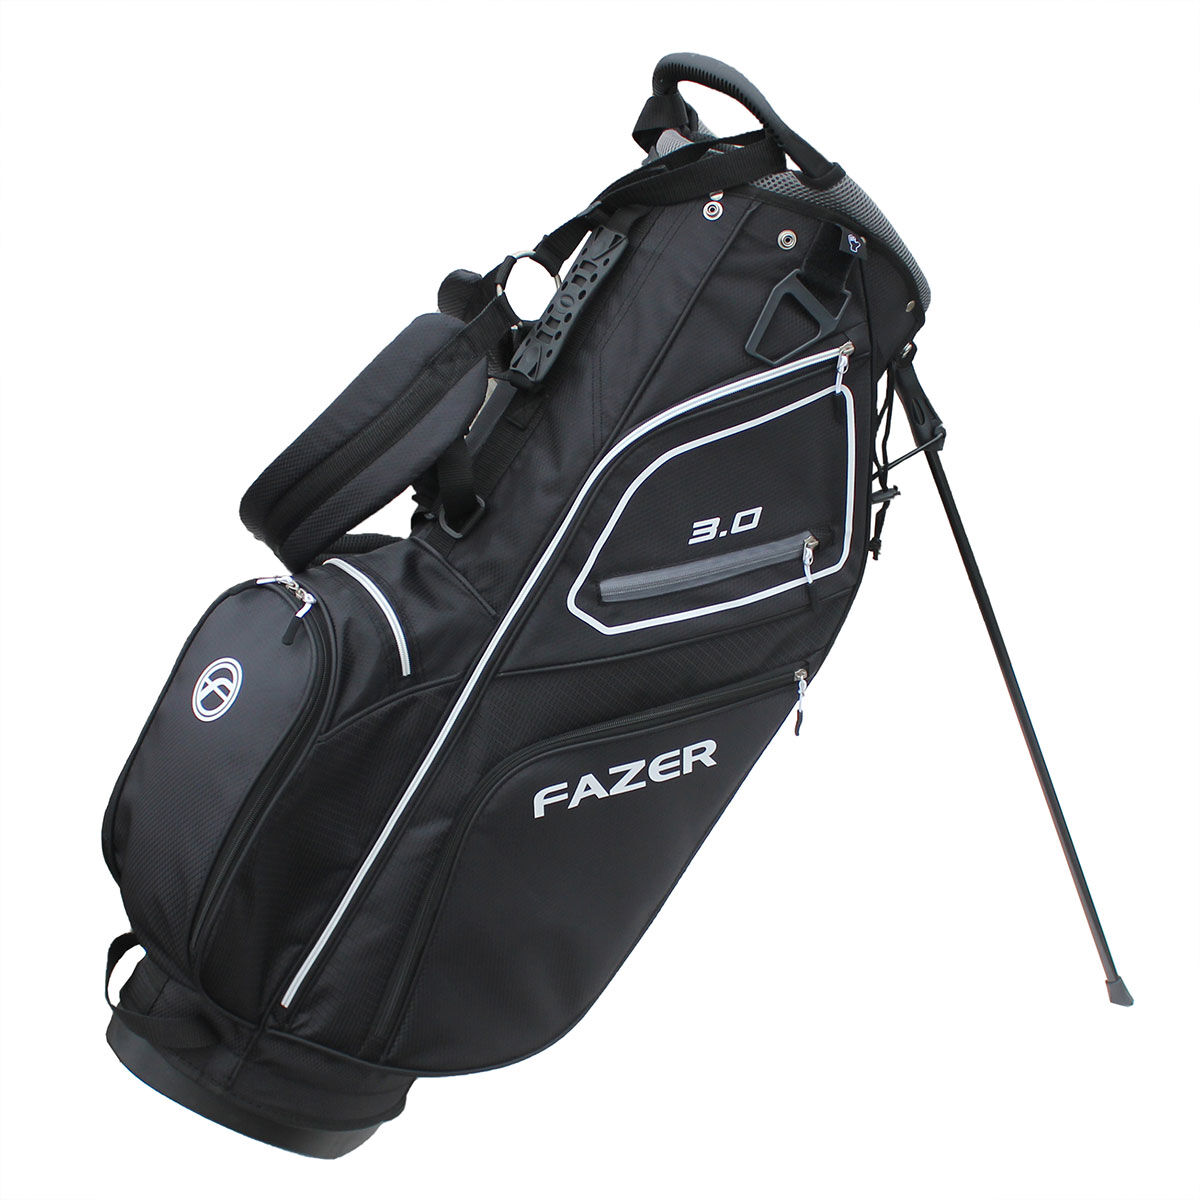 Fazer 3.0 Lightweight Golf Stand Bag, Black/silver, One Size | American Golf von Fazer